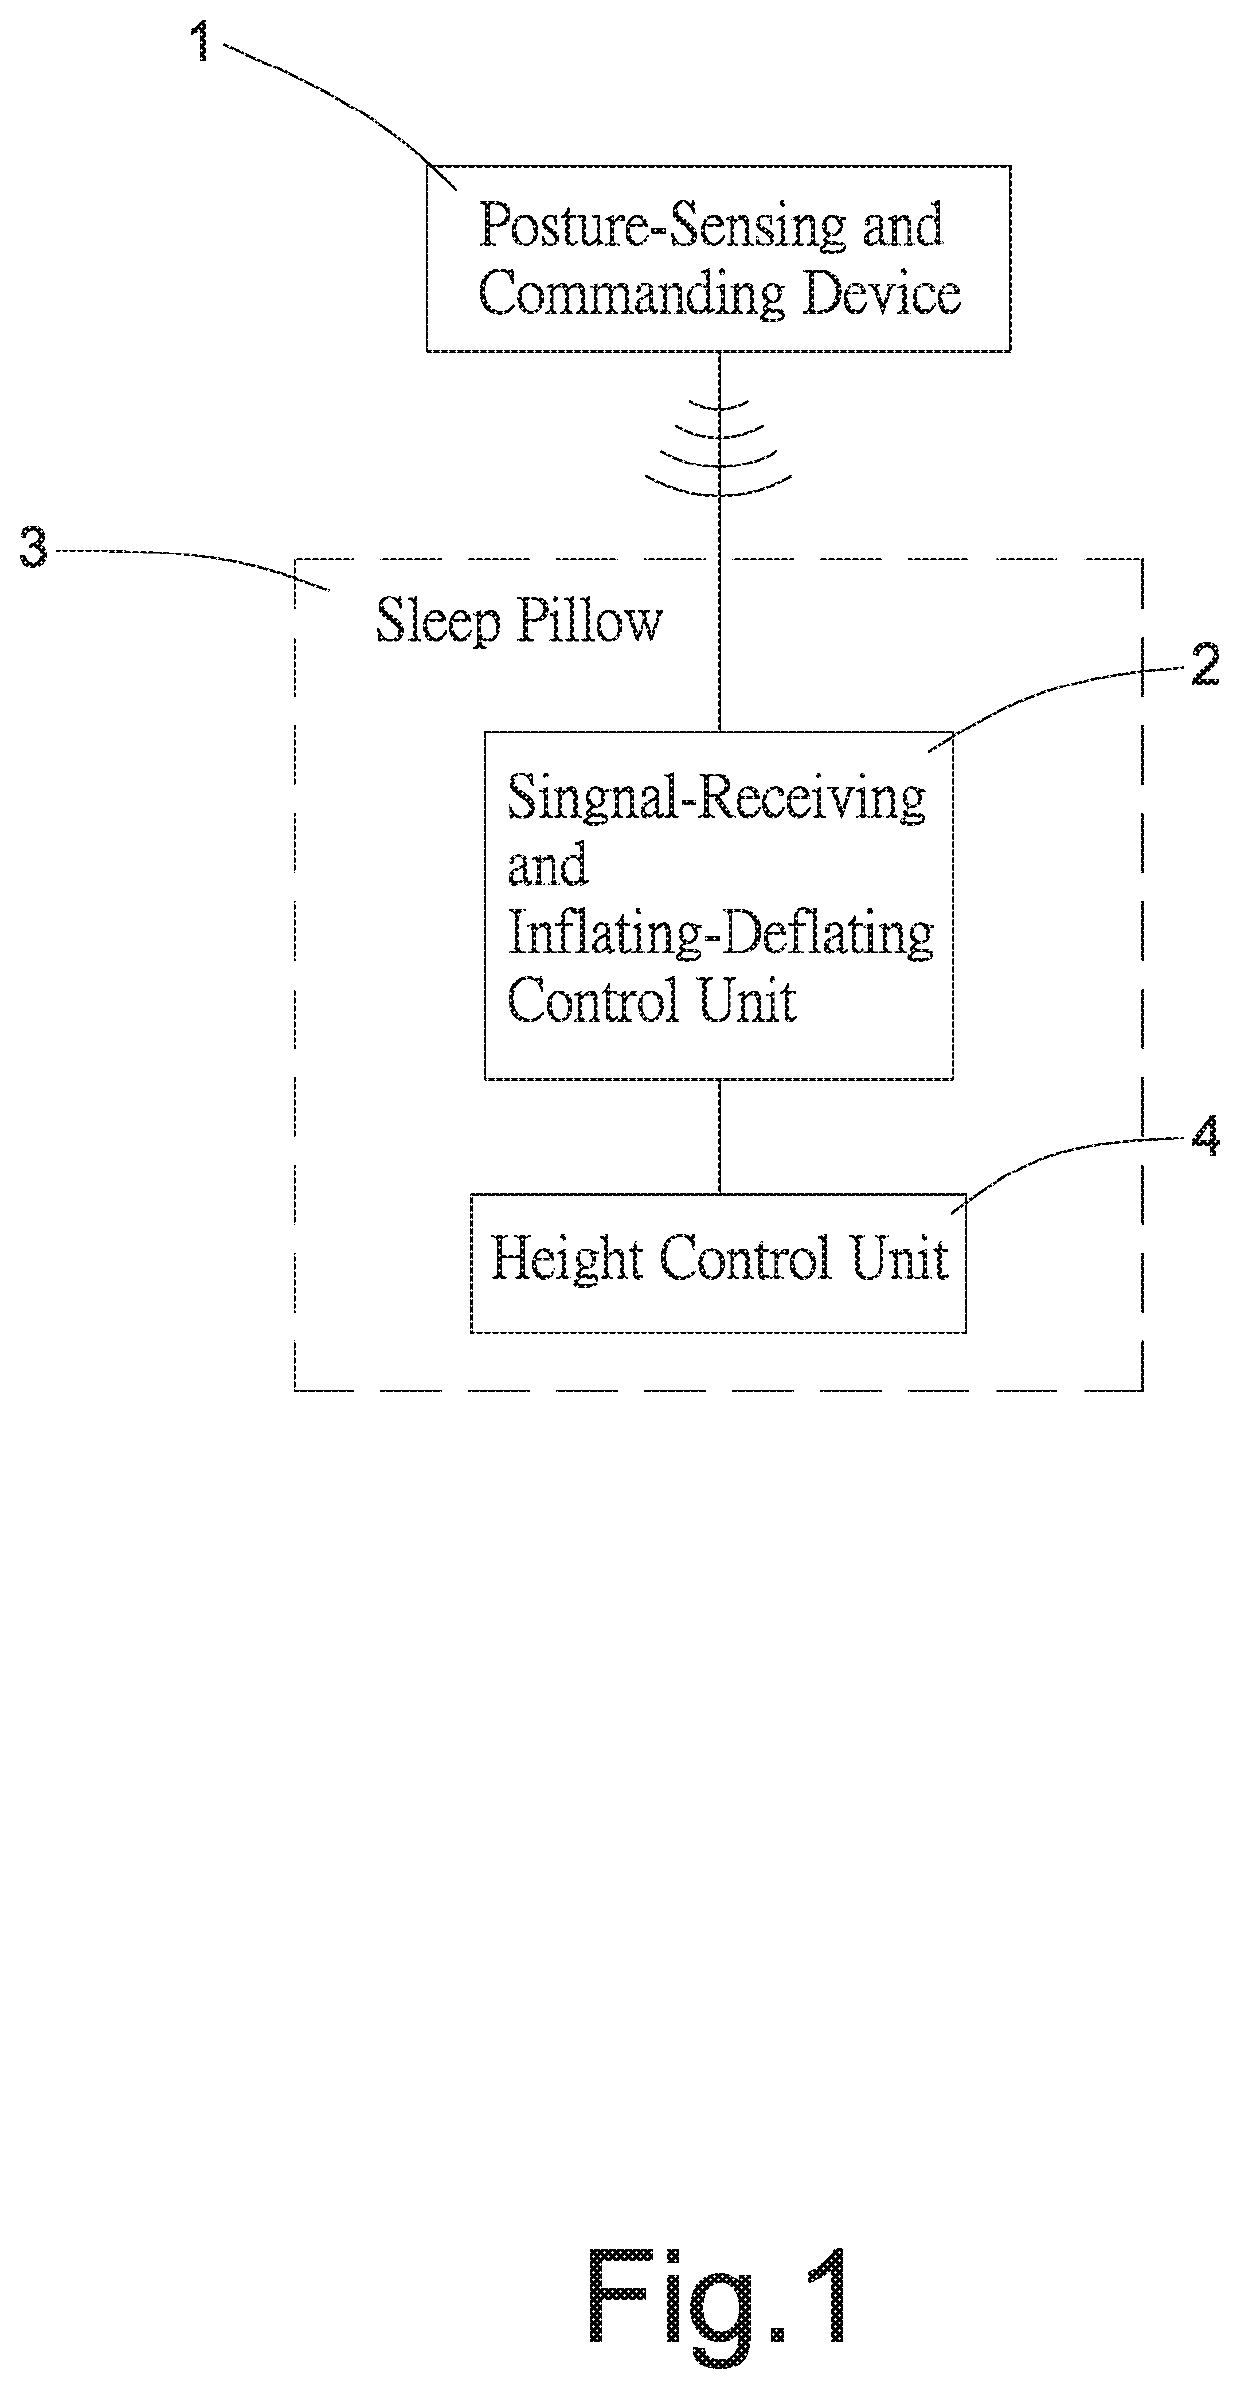 Air-bag-lifting sleep pillow structure